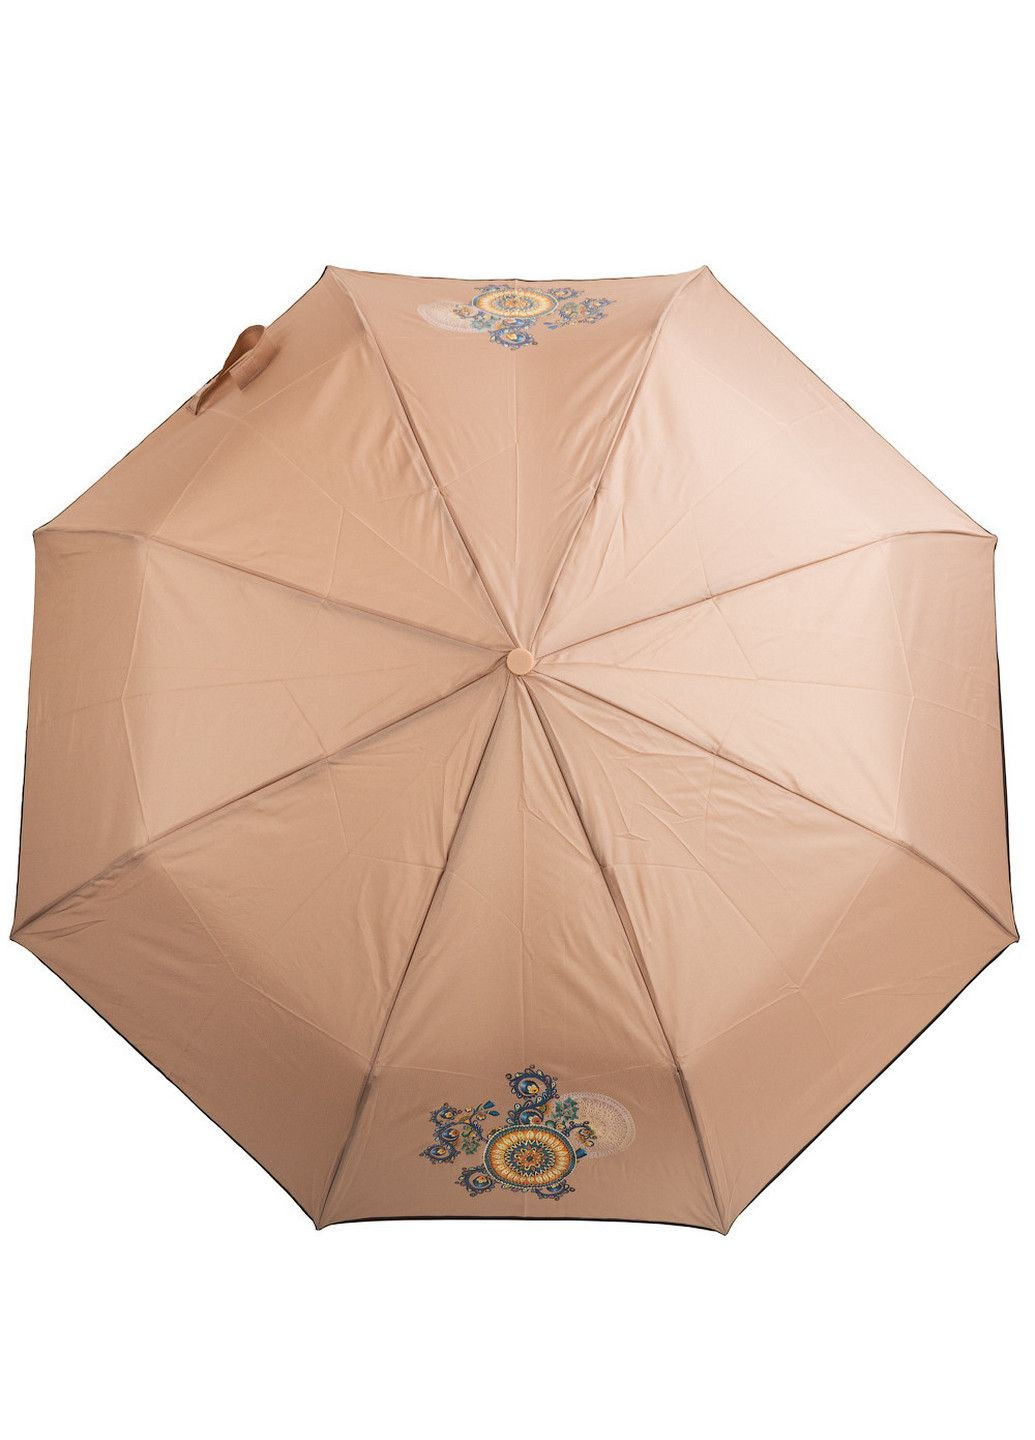 Складной зонт полуавтомат 100 см Art rain (197766724)